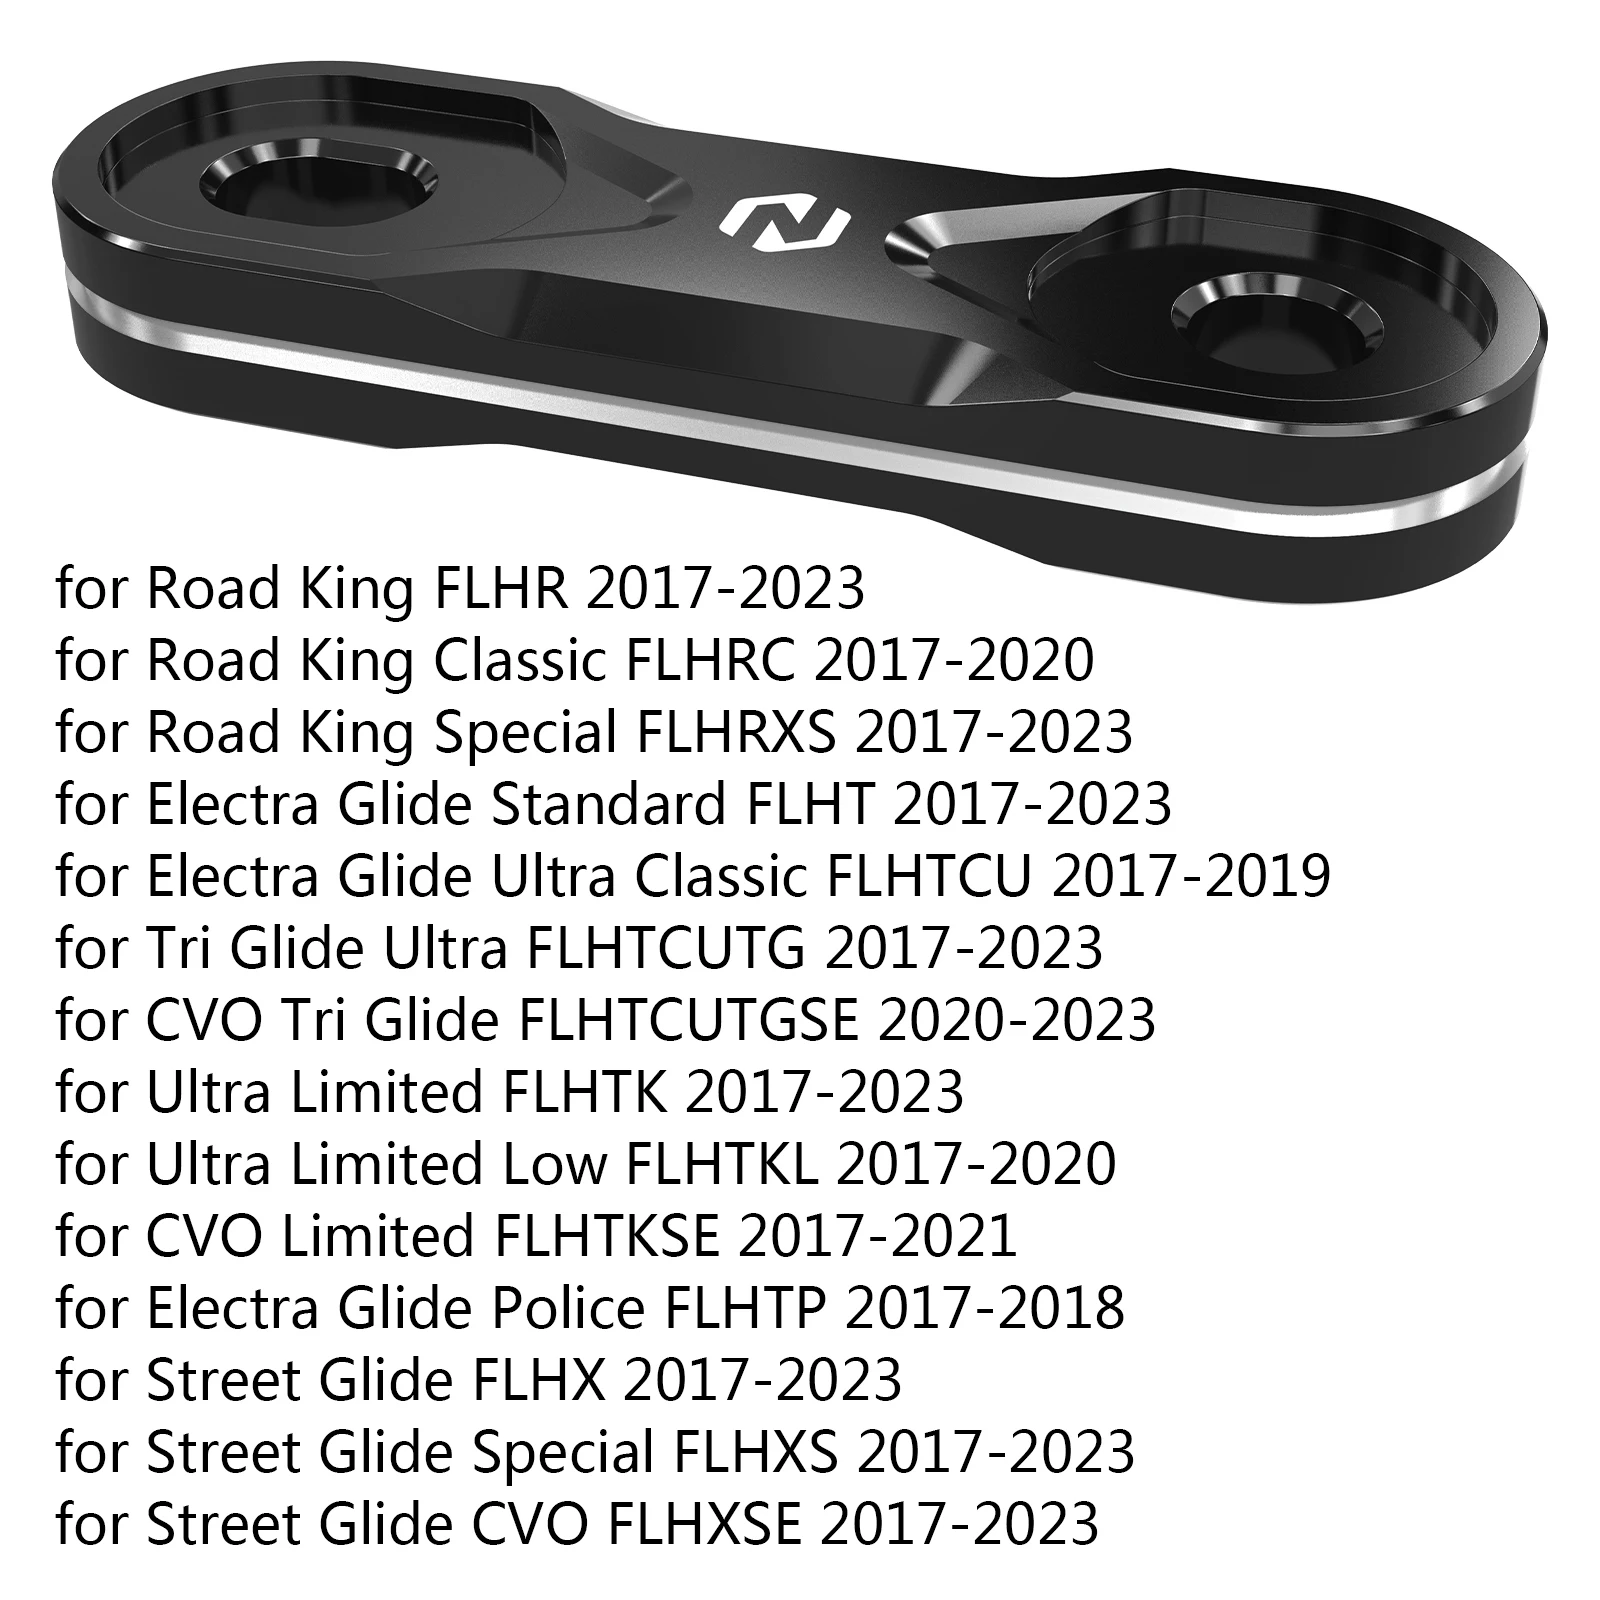 Комплект для Удаления и Перемещения Мотоциклетного Рожка Harley Road King FLHR 2017-2023 Ultra Limited FLHTK 2017-2023 Street Glide 2017-2023